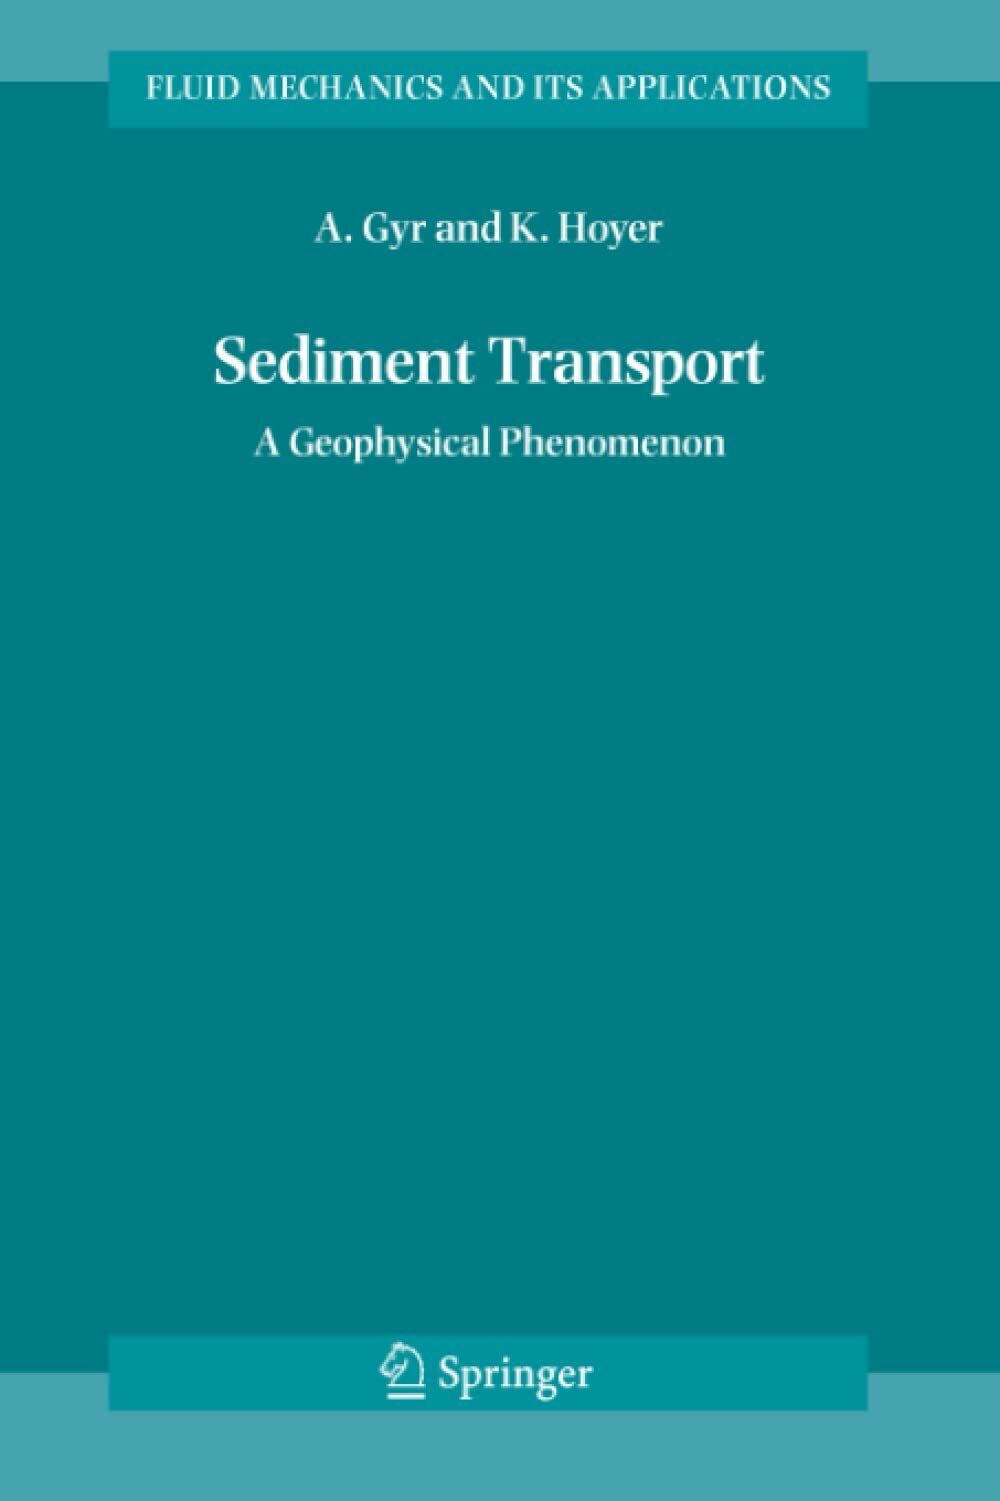 Sediment Transport - Albert Gyr, Klaus Hoyer - Springer, 2010